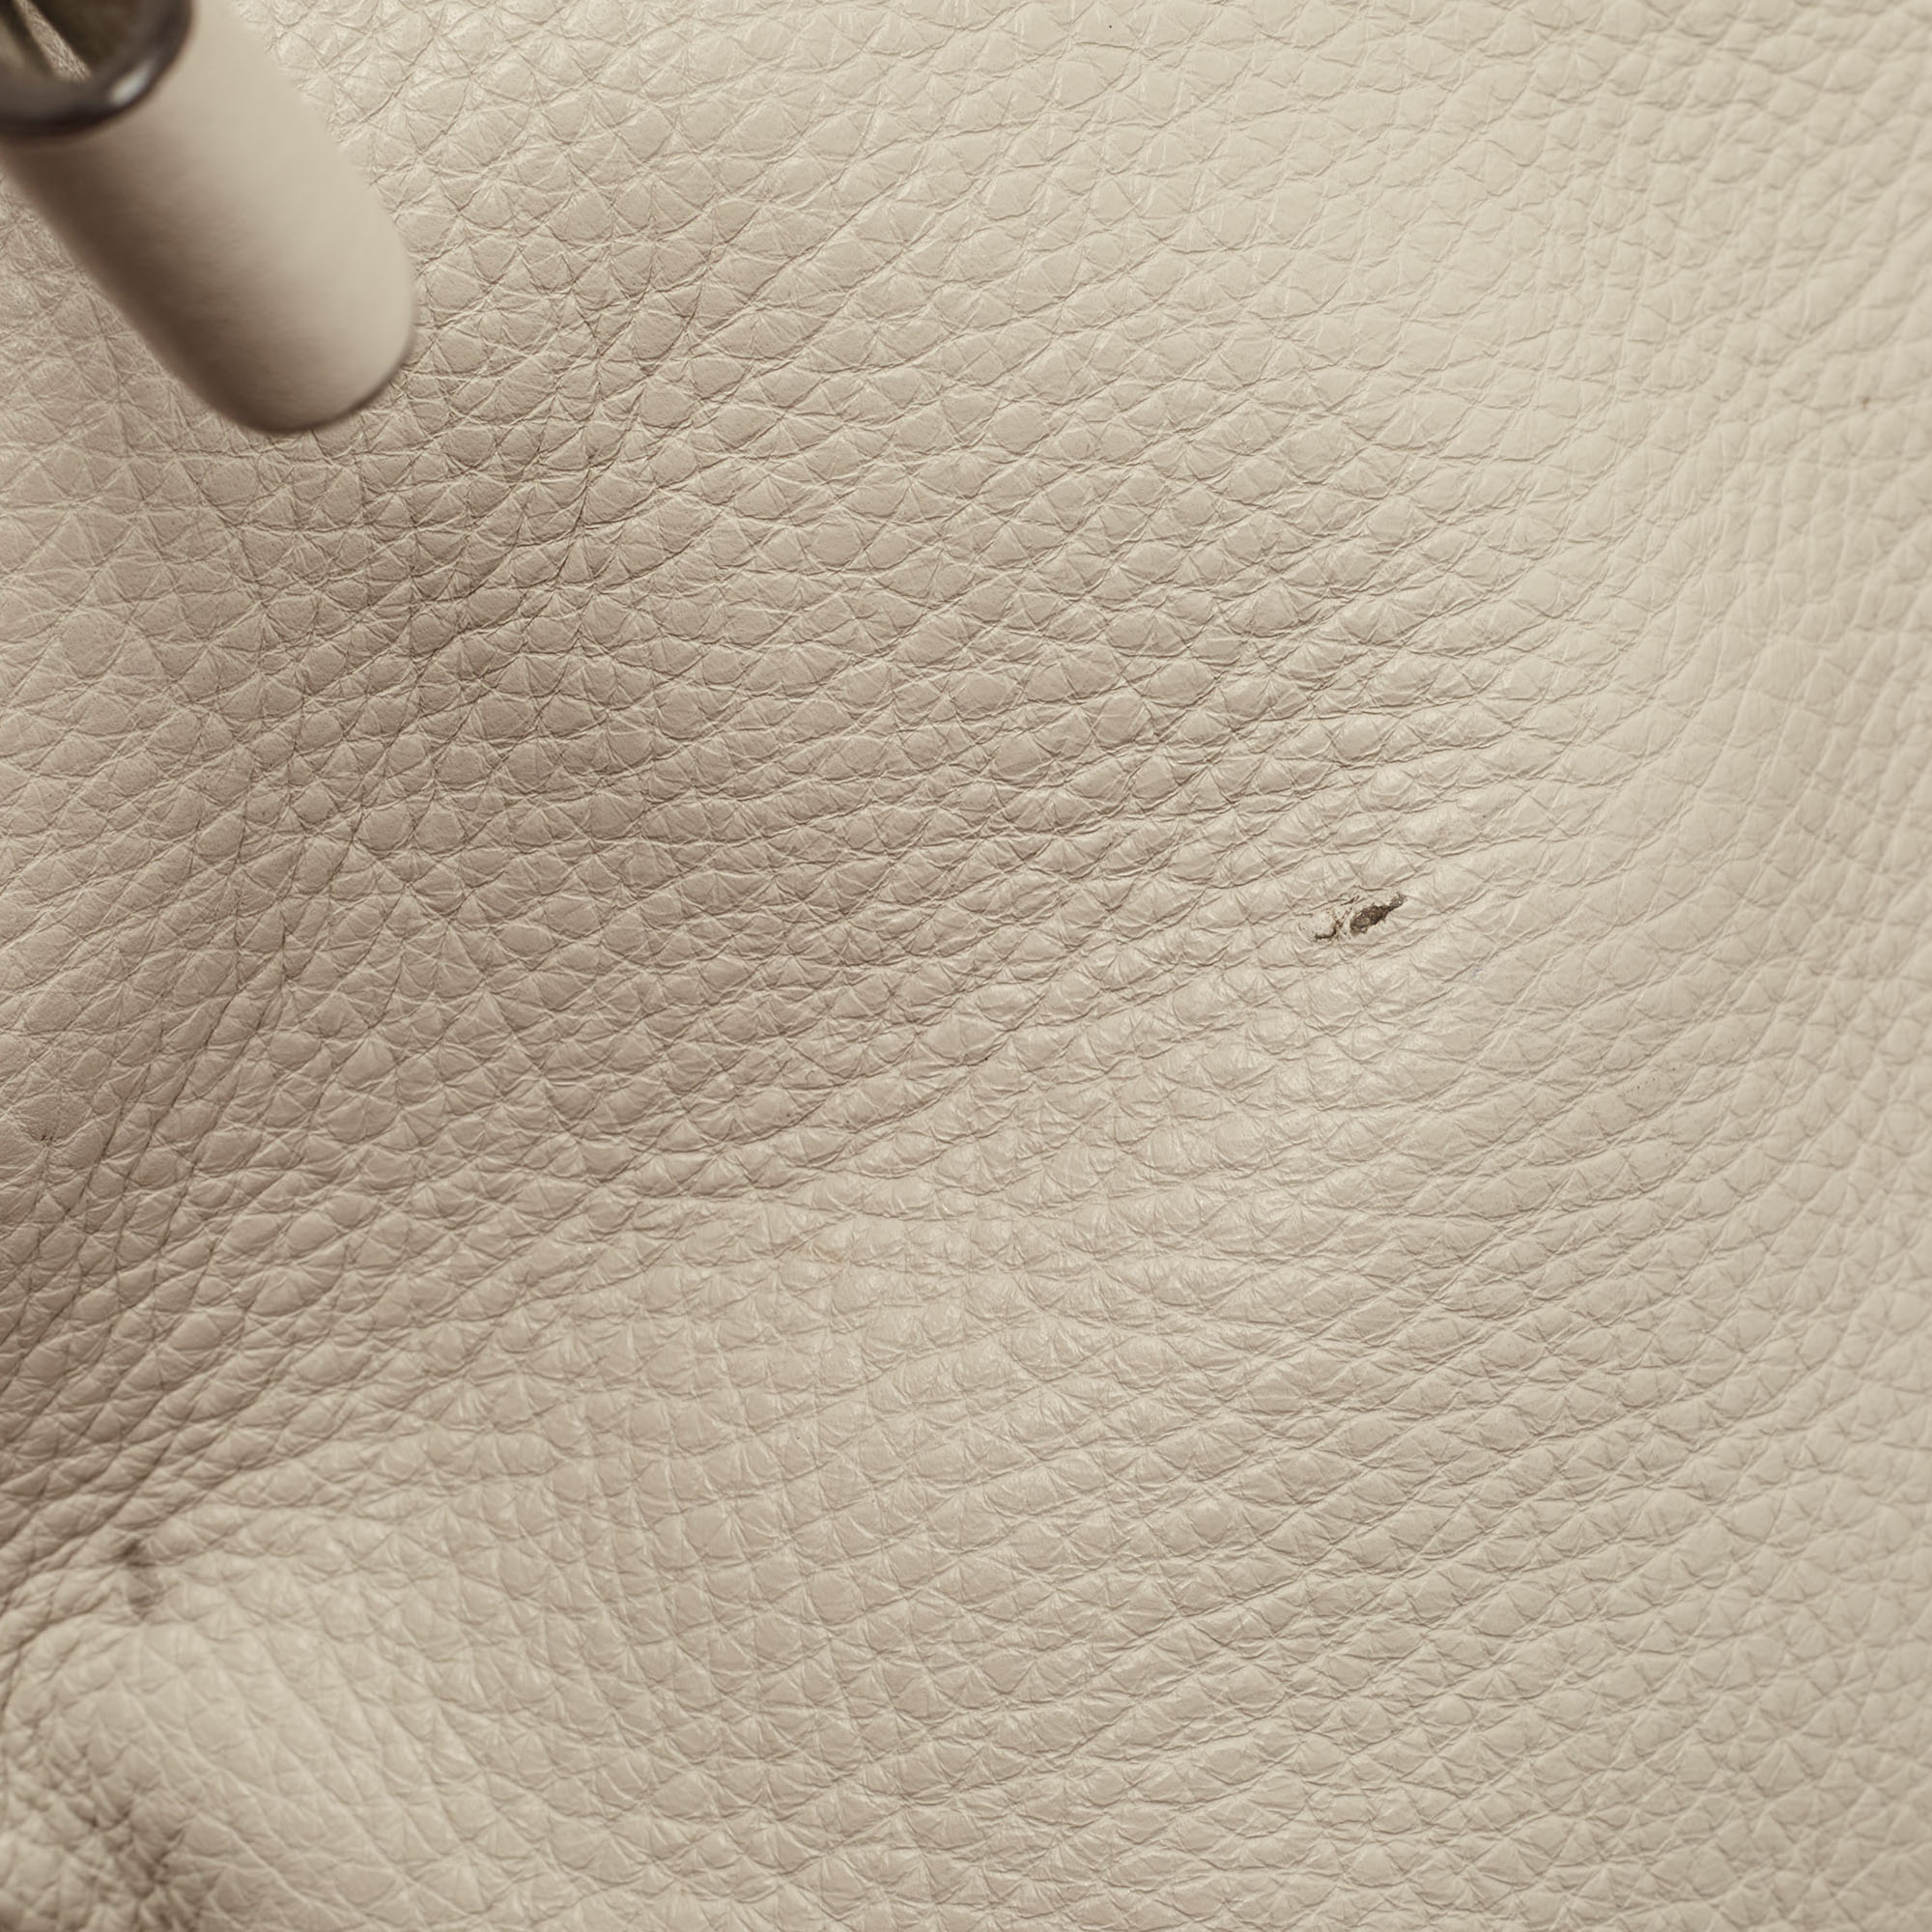 Salvatore Ferragamo Cream Leather Medium Sofia Top Handle Bag